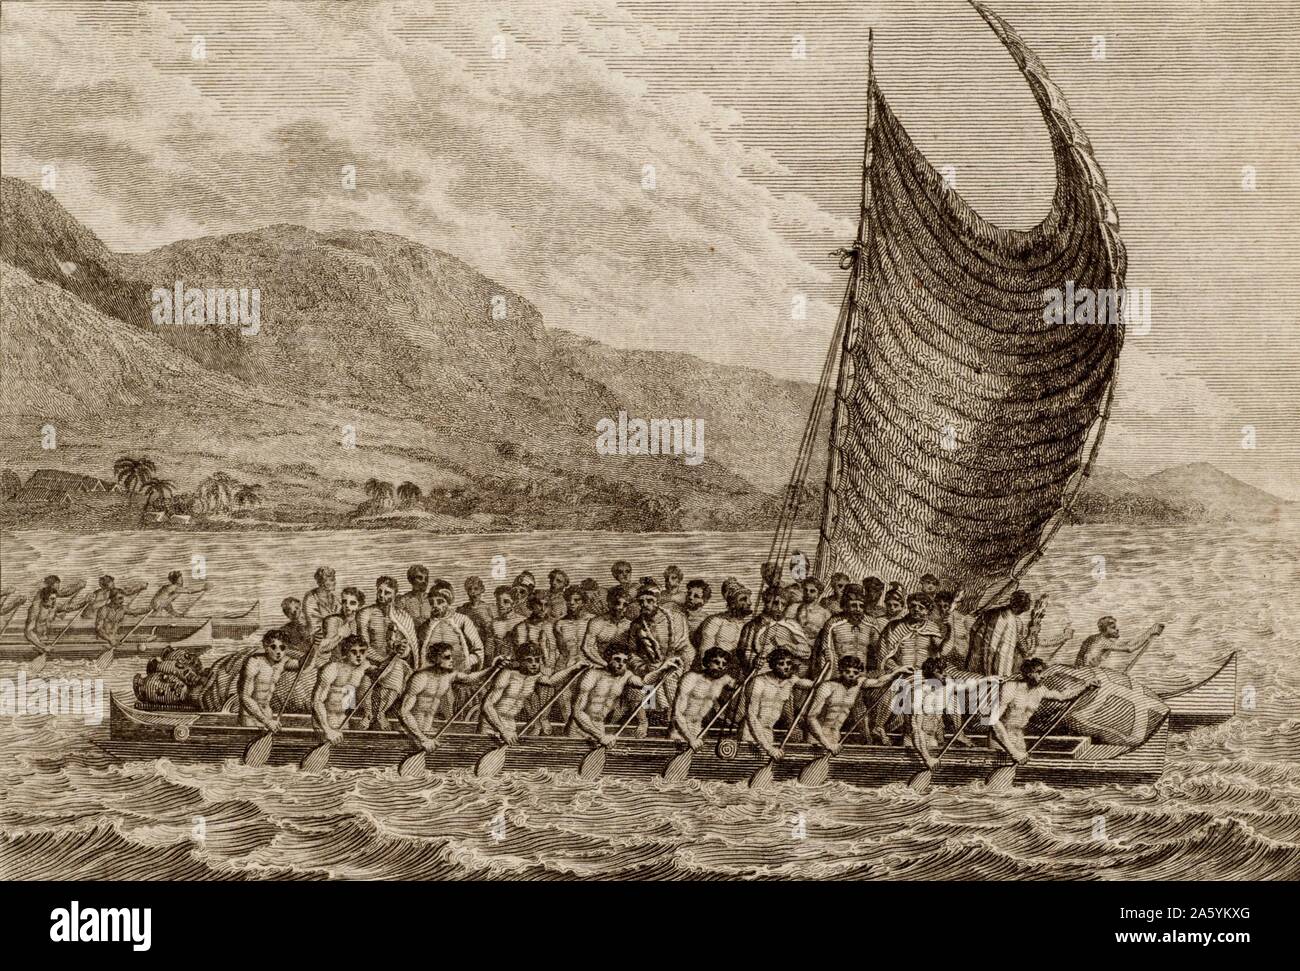 Terreeoboo, re di O'Whyee, portando presenta a Captain Cook". Terreeoboo e il suo partito in viaggio in catamarano con dieci uomini su ciascun lato la propulsione di esso con le pale. James Cook (1728-1779) British navigator, explorer e cartografo nel 1778, il suo terzo e ultimo viaggio, fu il primo europeo a visitare le Isole Hawaii che egli ha chiamato le isole Sandwich. Incisione da "Nuovo sistema di geografia" di Thomas Bankes (Londra, c1785). Foto Stock